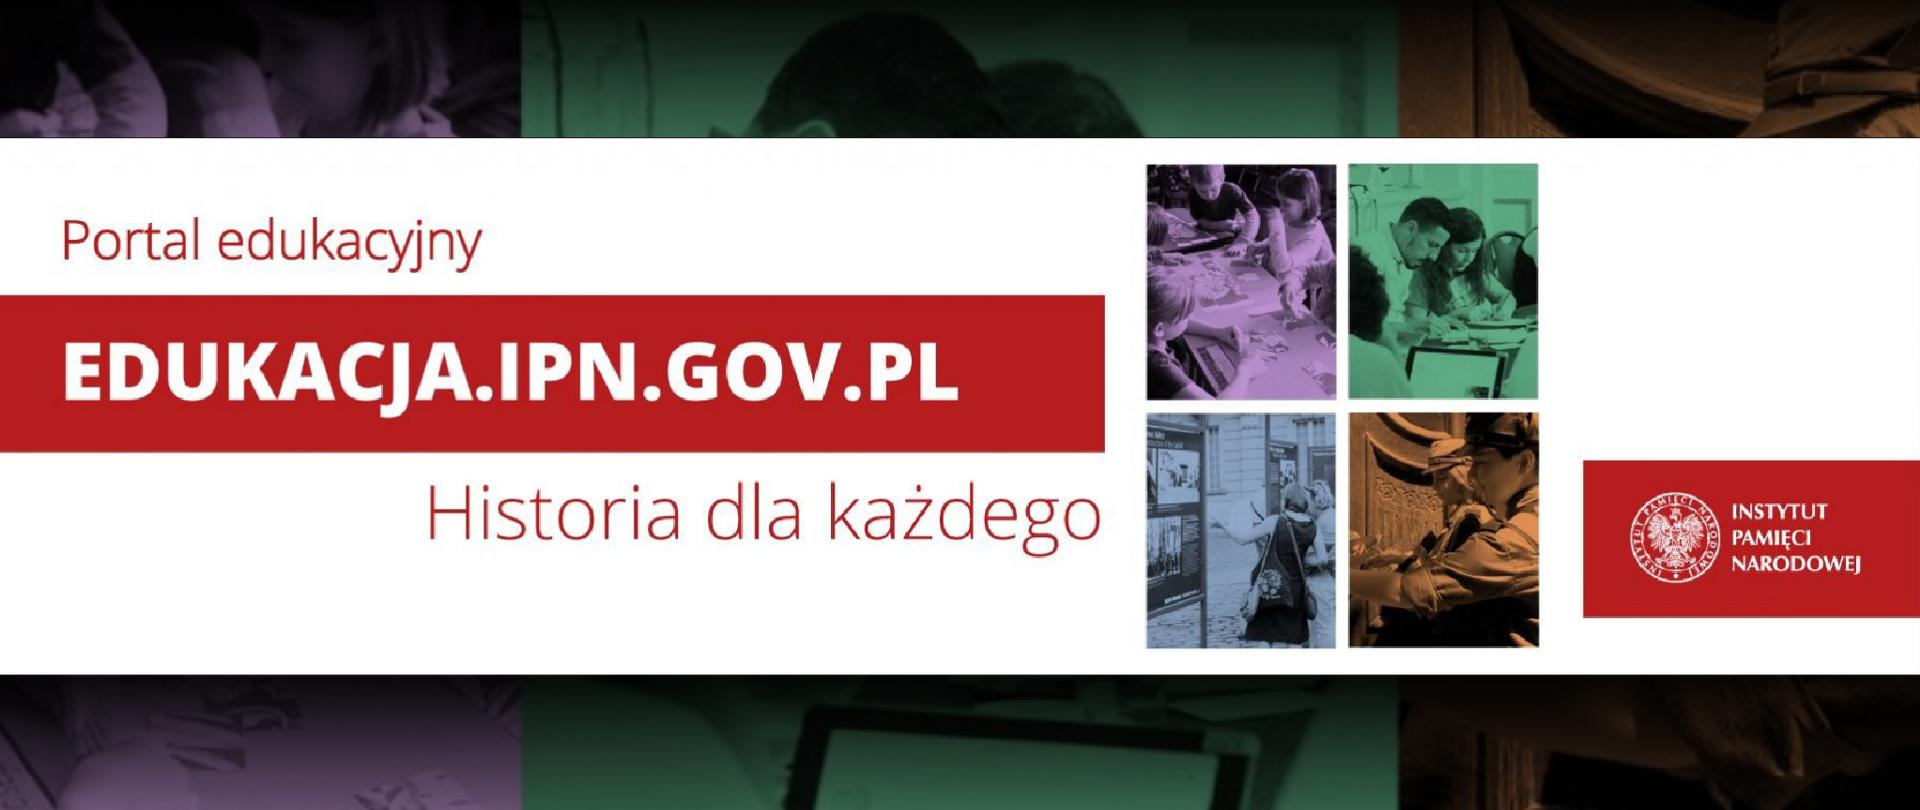 Grafika z tekstem: Portal edukacyjny edukacja.ipn.gov.pl Historia dla każdego